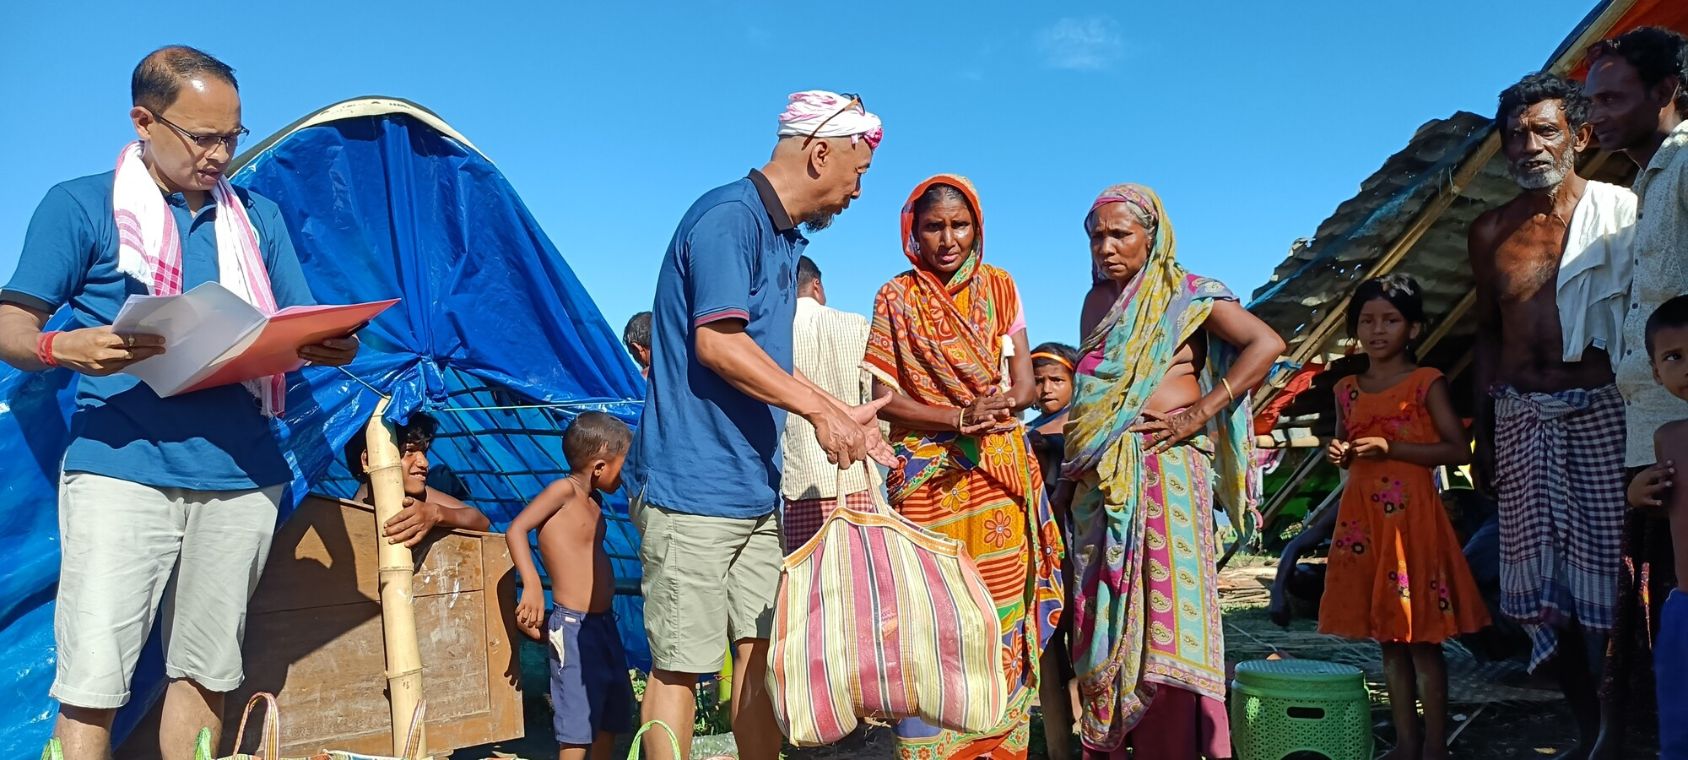 Ein Mann hält eine prall gefüllte Tasche in der Hand. Vor ihm stehen zwei Frauen im Sari, weitere Kinder und Männer stehen in der Nähe.